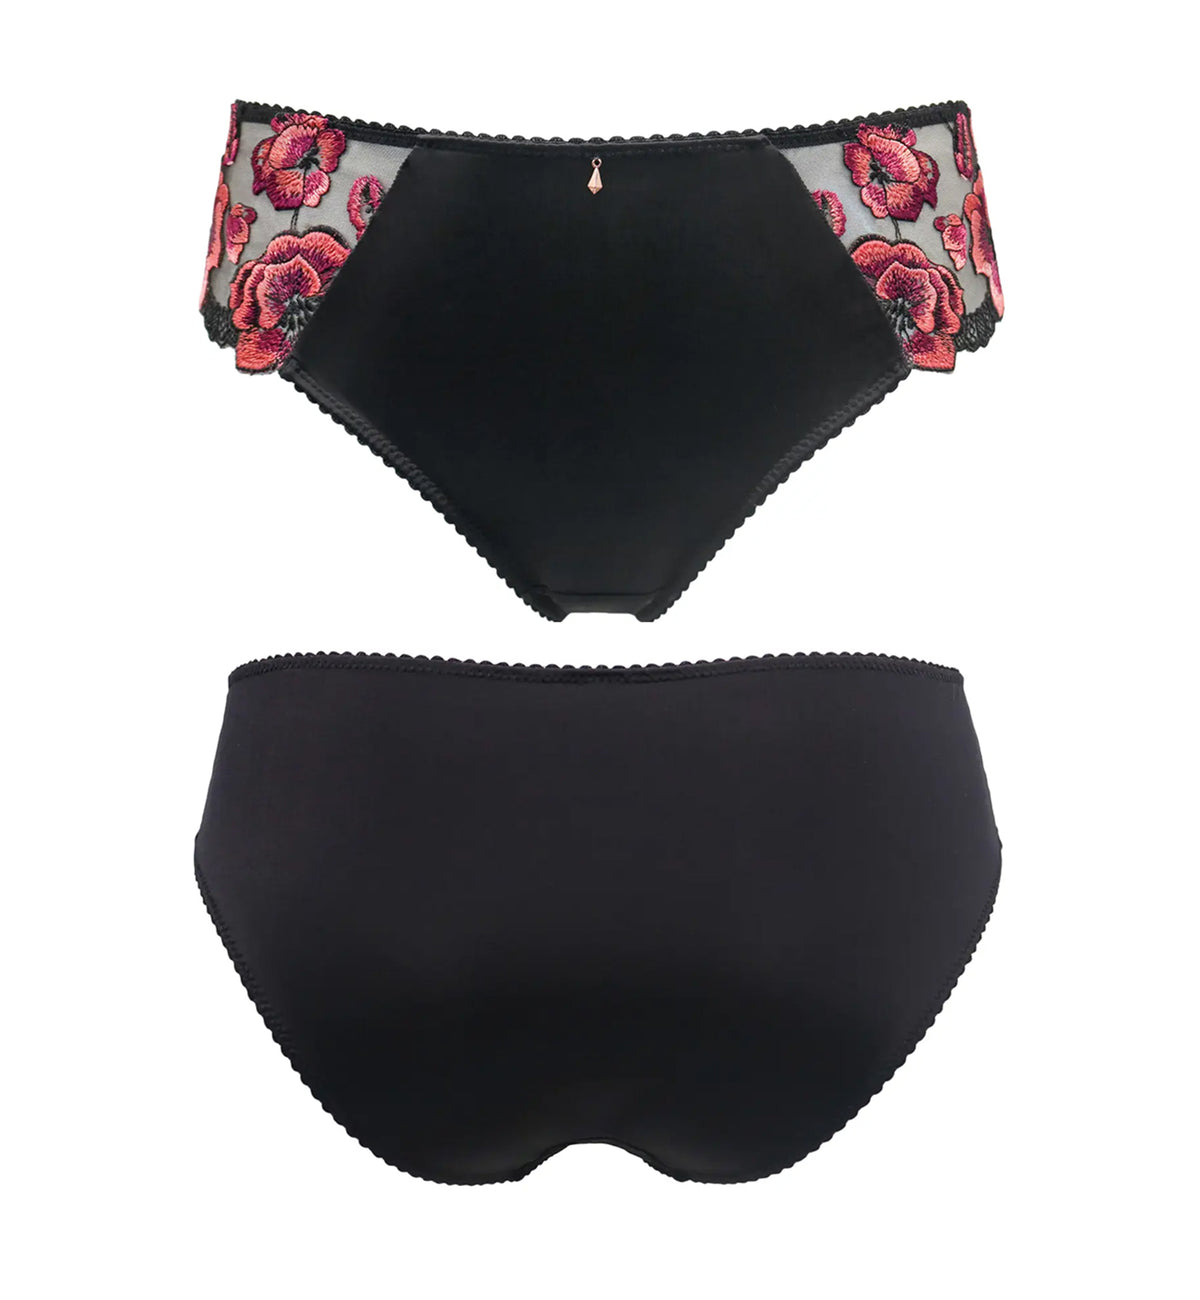 Pour Moi Soiree Embroidery Bikini Brief (37103),XS,Black/Pink - Black/Pink,XS